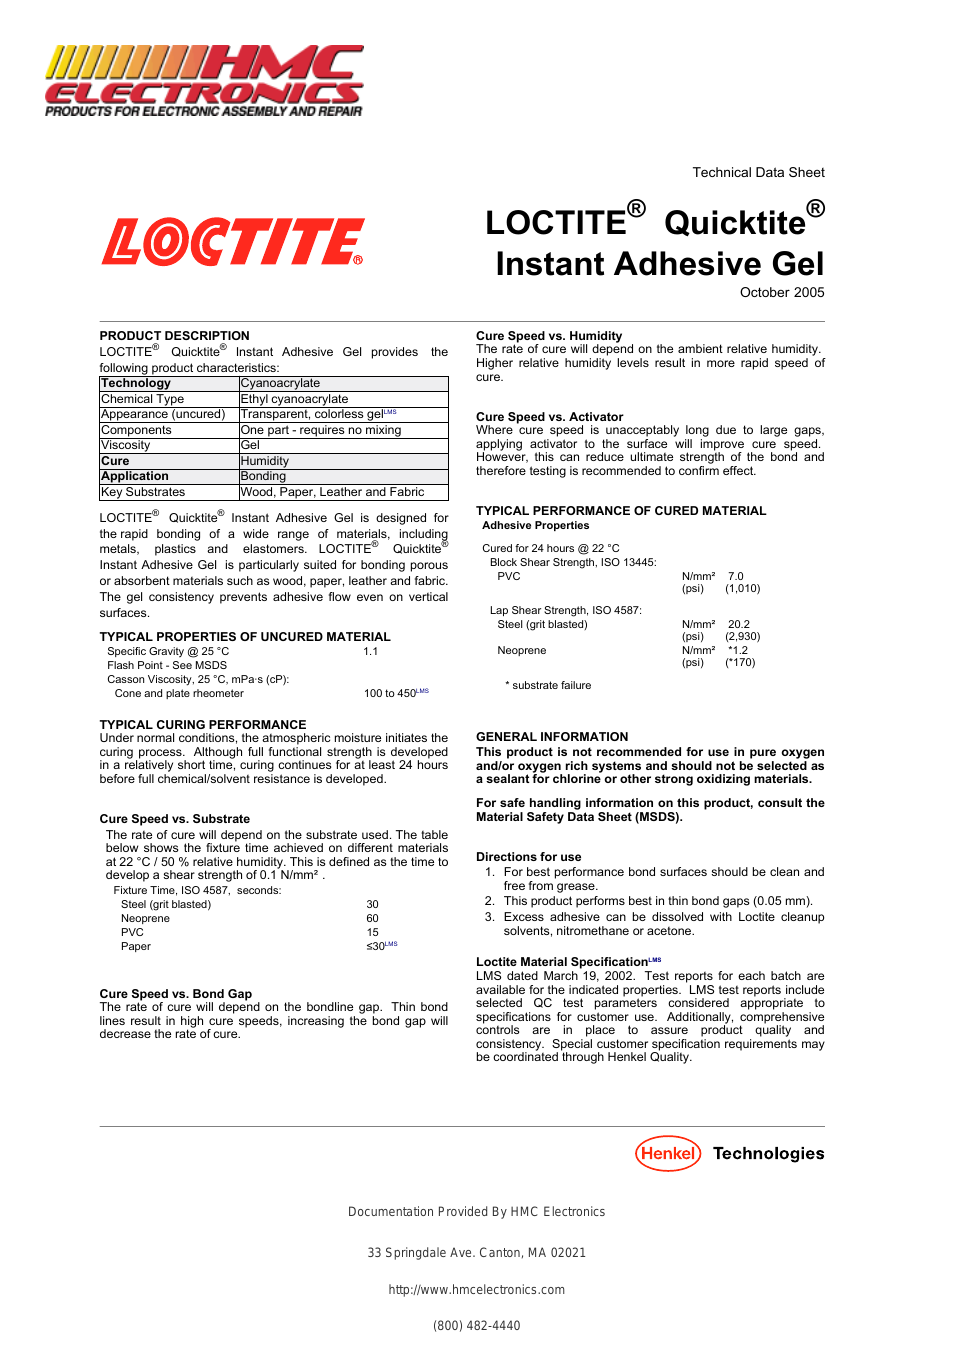 39202 Loctite Quicktite Instant Adhesive Gel